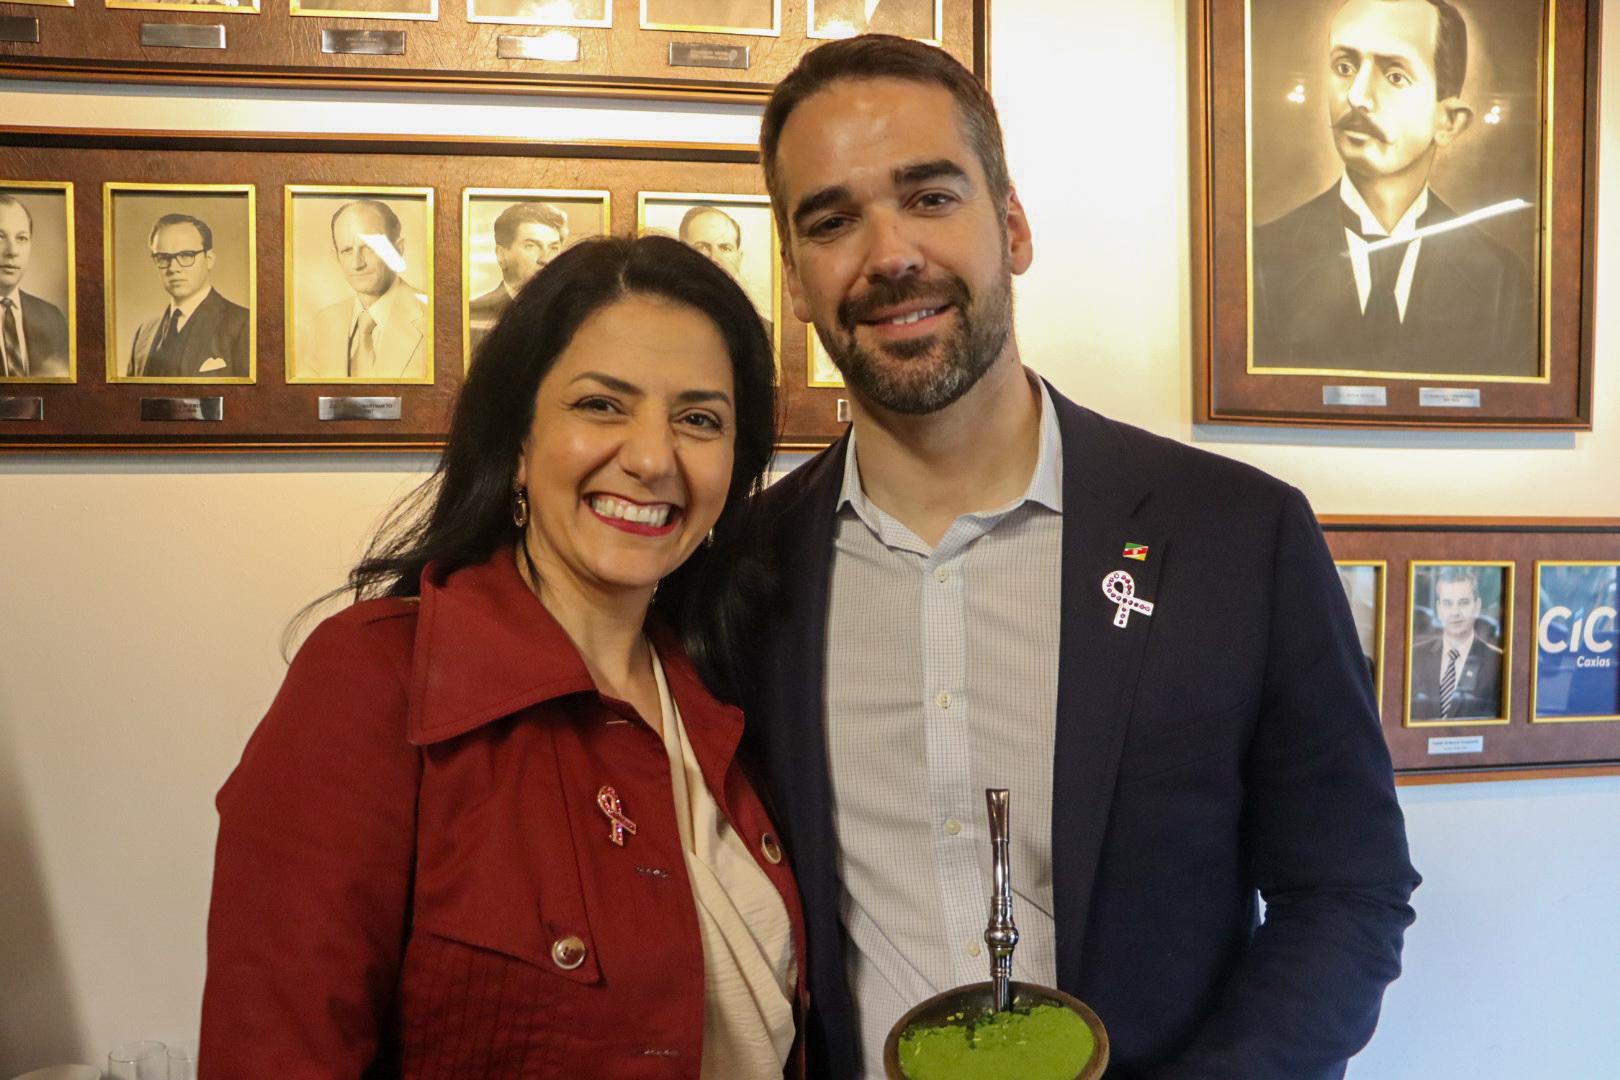 Vereadora Marisol Santos presenteia governador com laço Rosa produzido em Caxias do Sul